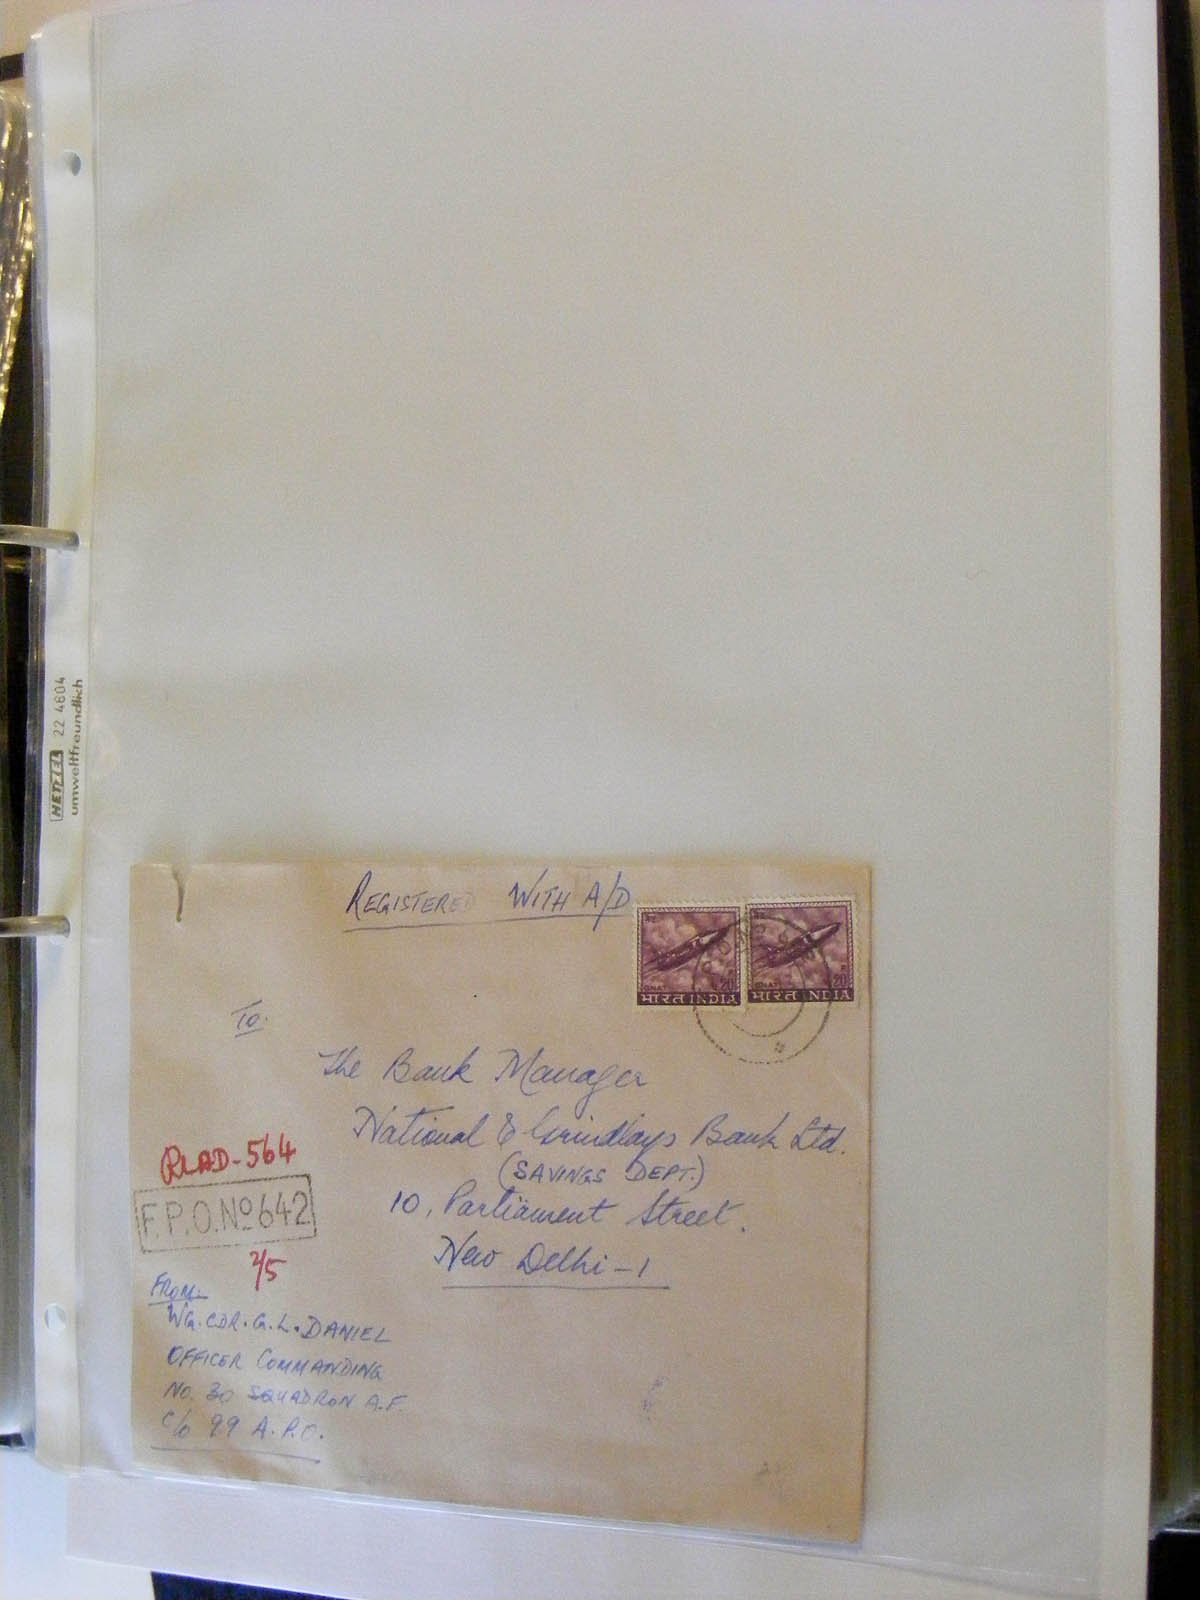 19584-1 111 - 19584 India dienst brieven.